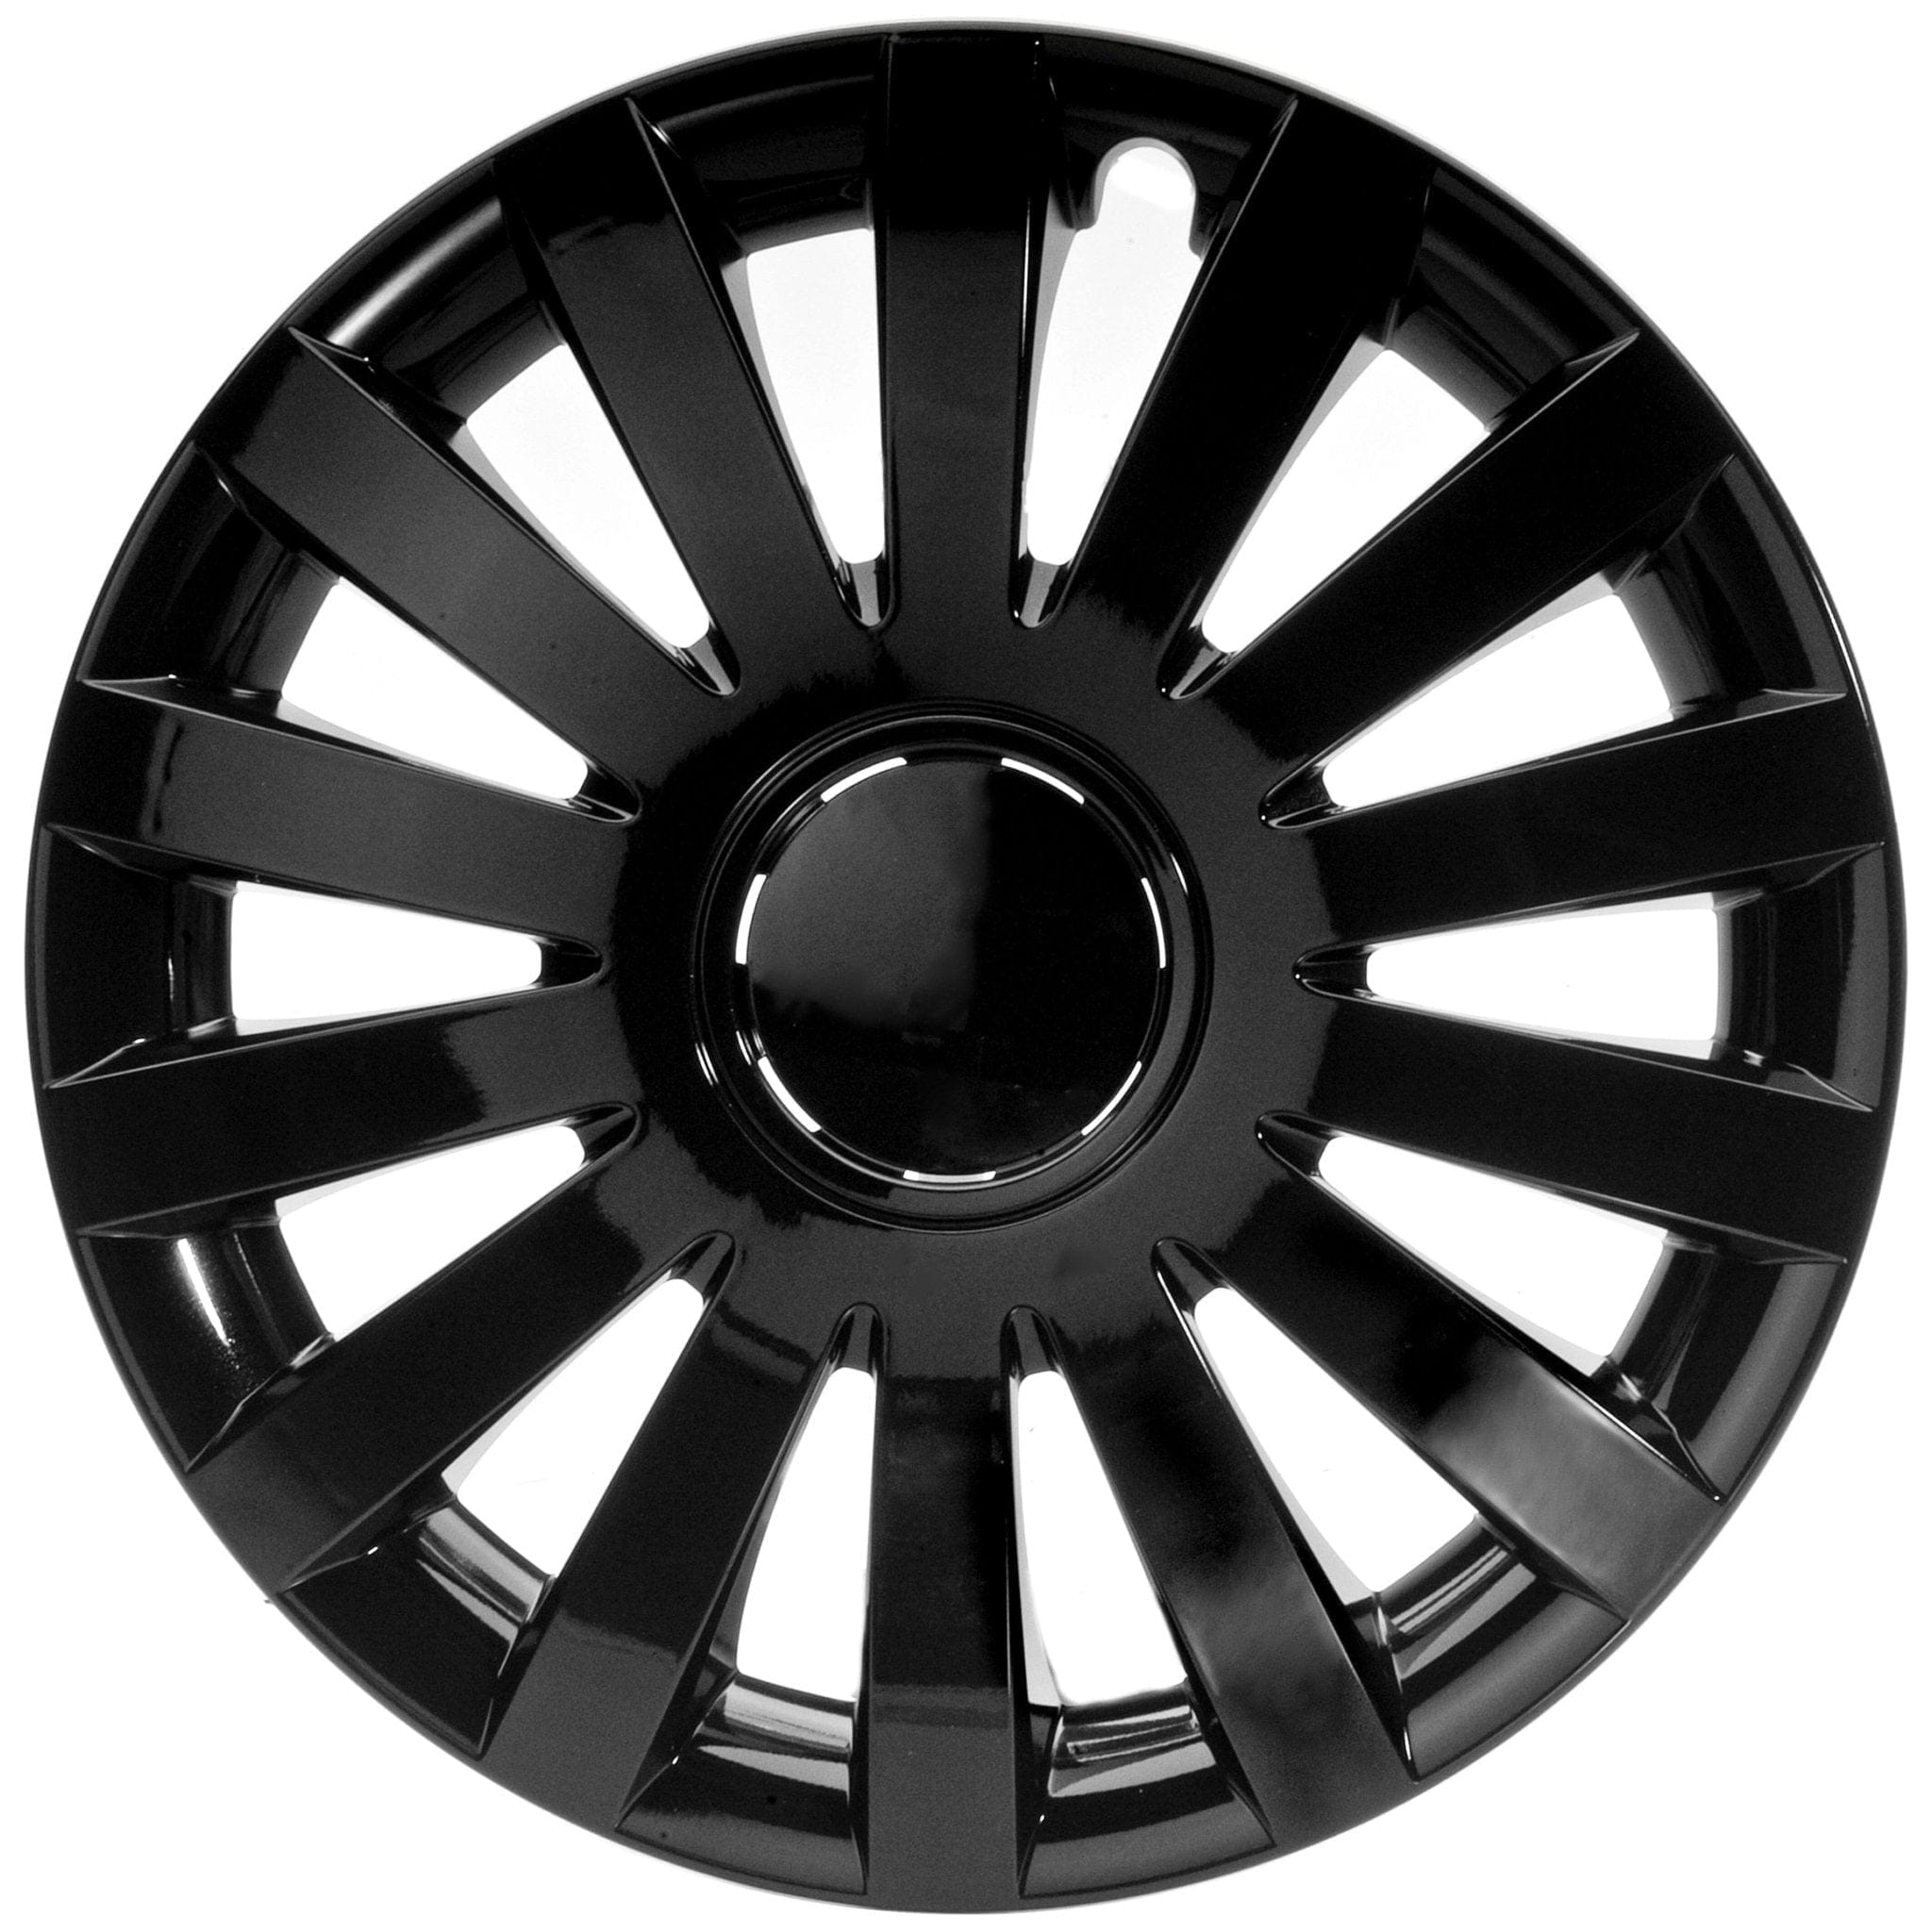 Radkappen silber-schwarz-grau - 4 Stück Wind Radzierblenden für Stahlfelgen 13-16 Zoll